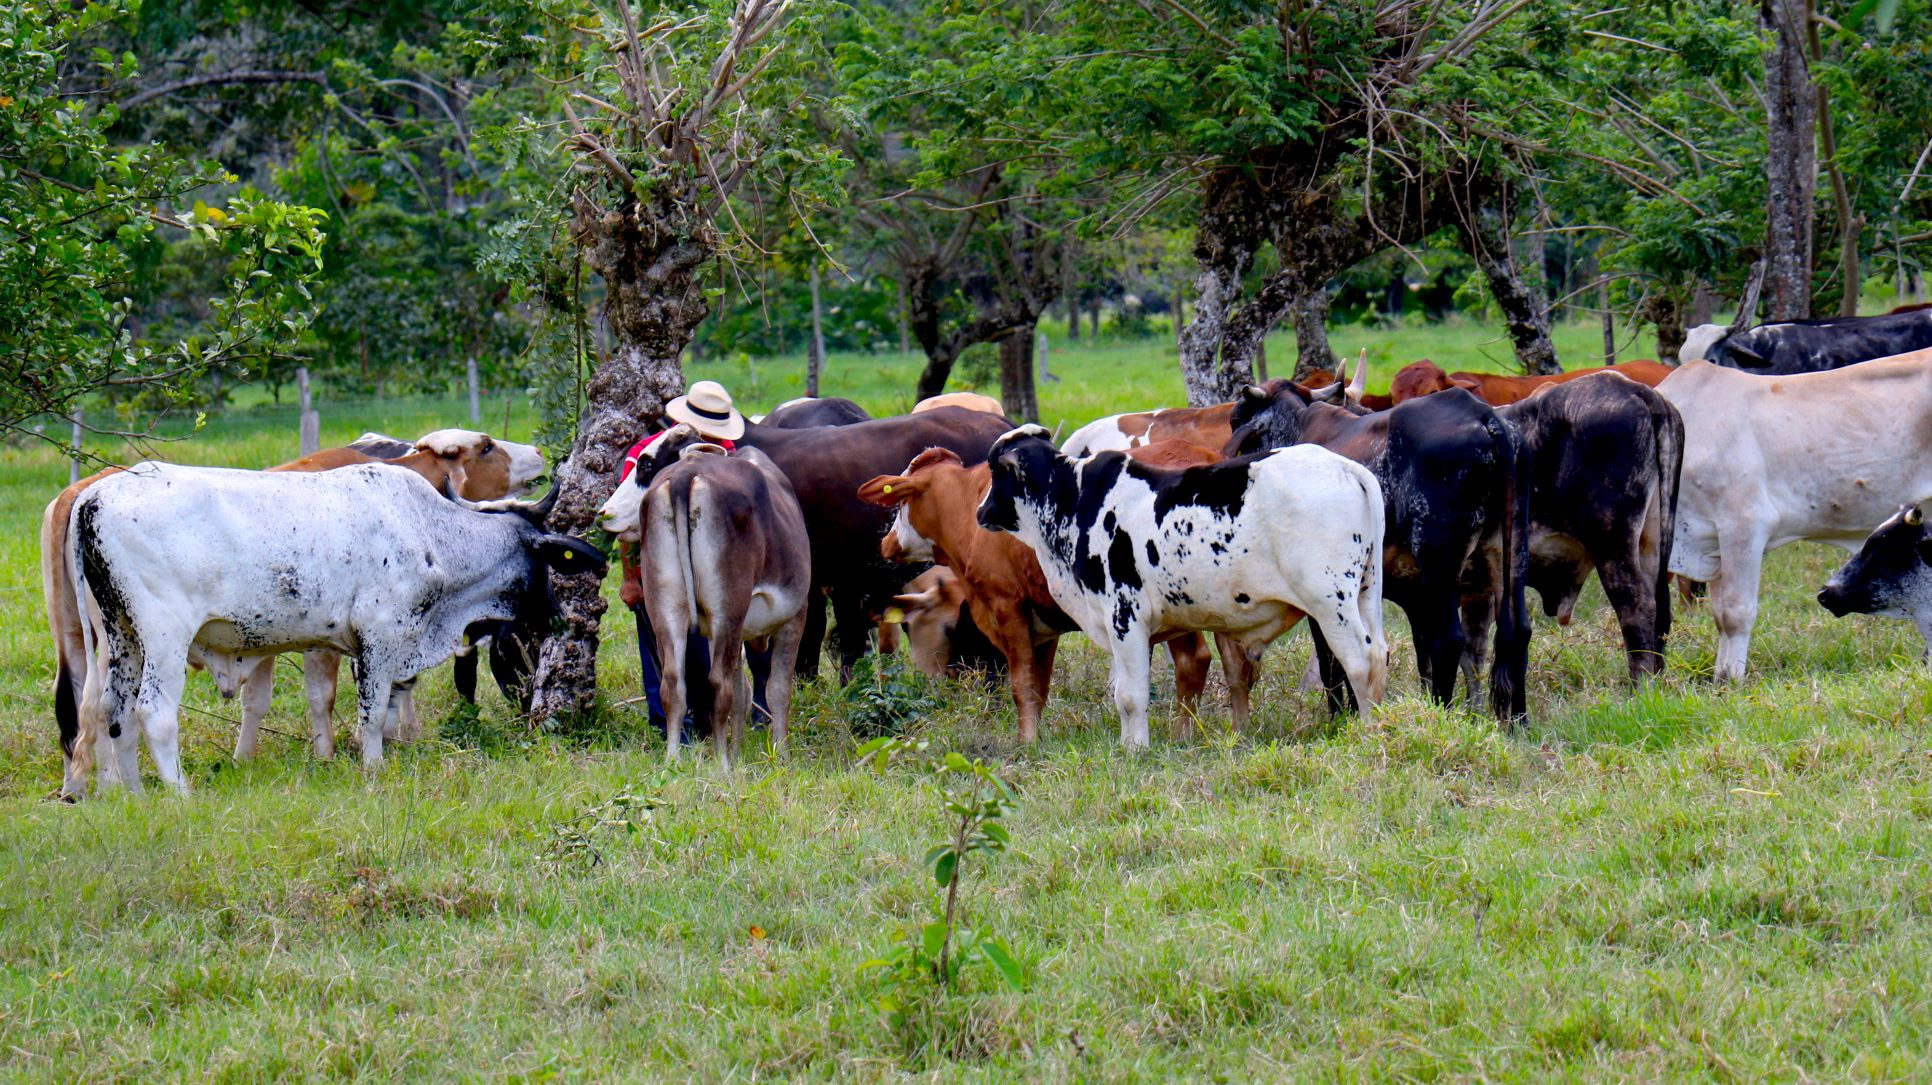  Orinoquía in Colombia. Photo: Jessica Belmont